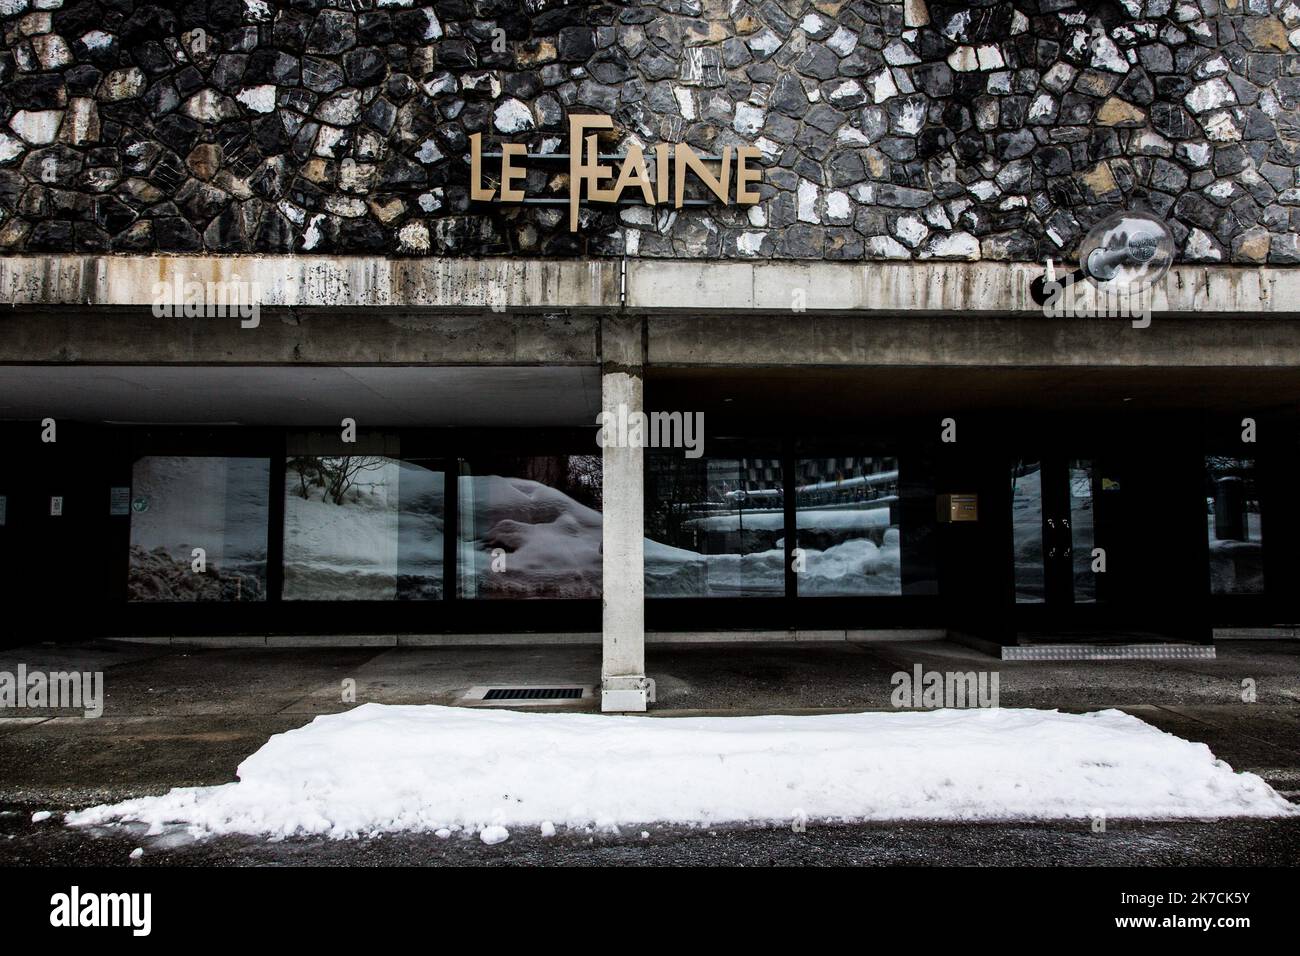 ©Sadak Souici / le Pictorium/MAXPPP - Sadak Souici / le Pictorium - 02/02/2021 - Francia / Haute-Savoie / Flaine - l'hotel le Flaine est un hotel situe a Araches, en France, Construit en 1969 par Marcel Breuer dans le style moderniste (brutalisme).le domaine skiable de Flaine est ferme depuis la pandemie du coronavirus en France. Flaine est une station de sports d'hiver francaise a 2500 m creee en 1968, dans le cadre du Plan Neige 1964. La stazione accueille più d'un million de vacanciers chaque saison d'hiver mais depuis la pandemie du covid-19, elle est videe de ces touristes et ces vacancie Foto Stock